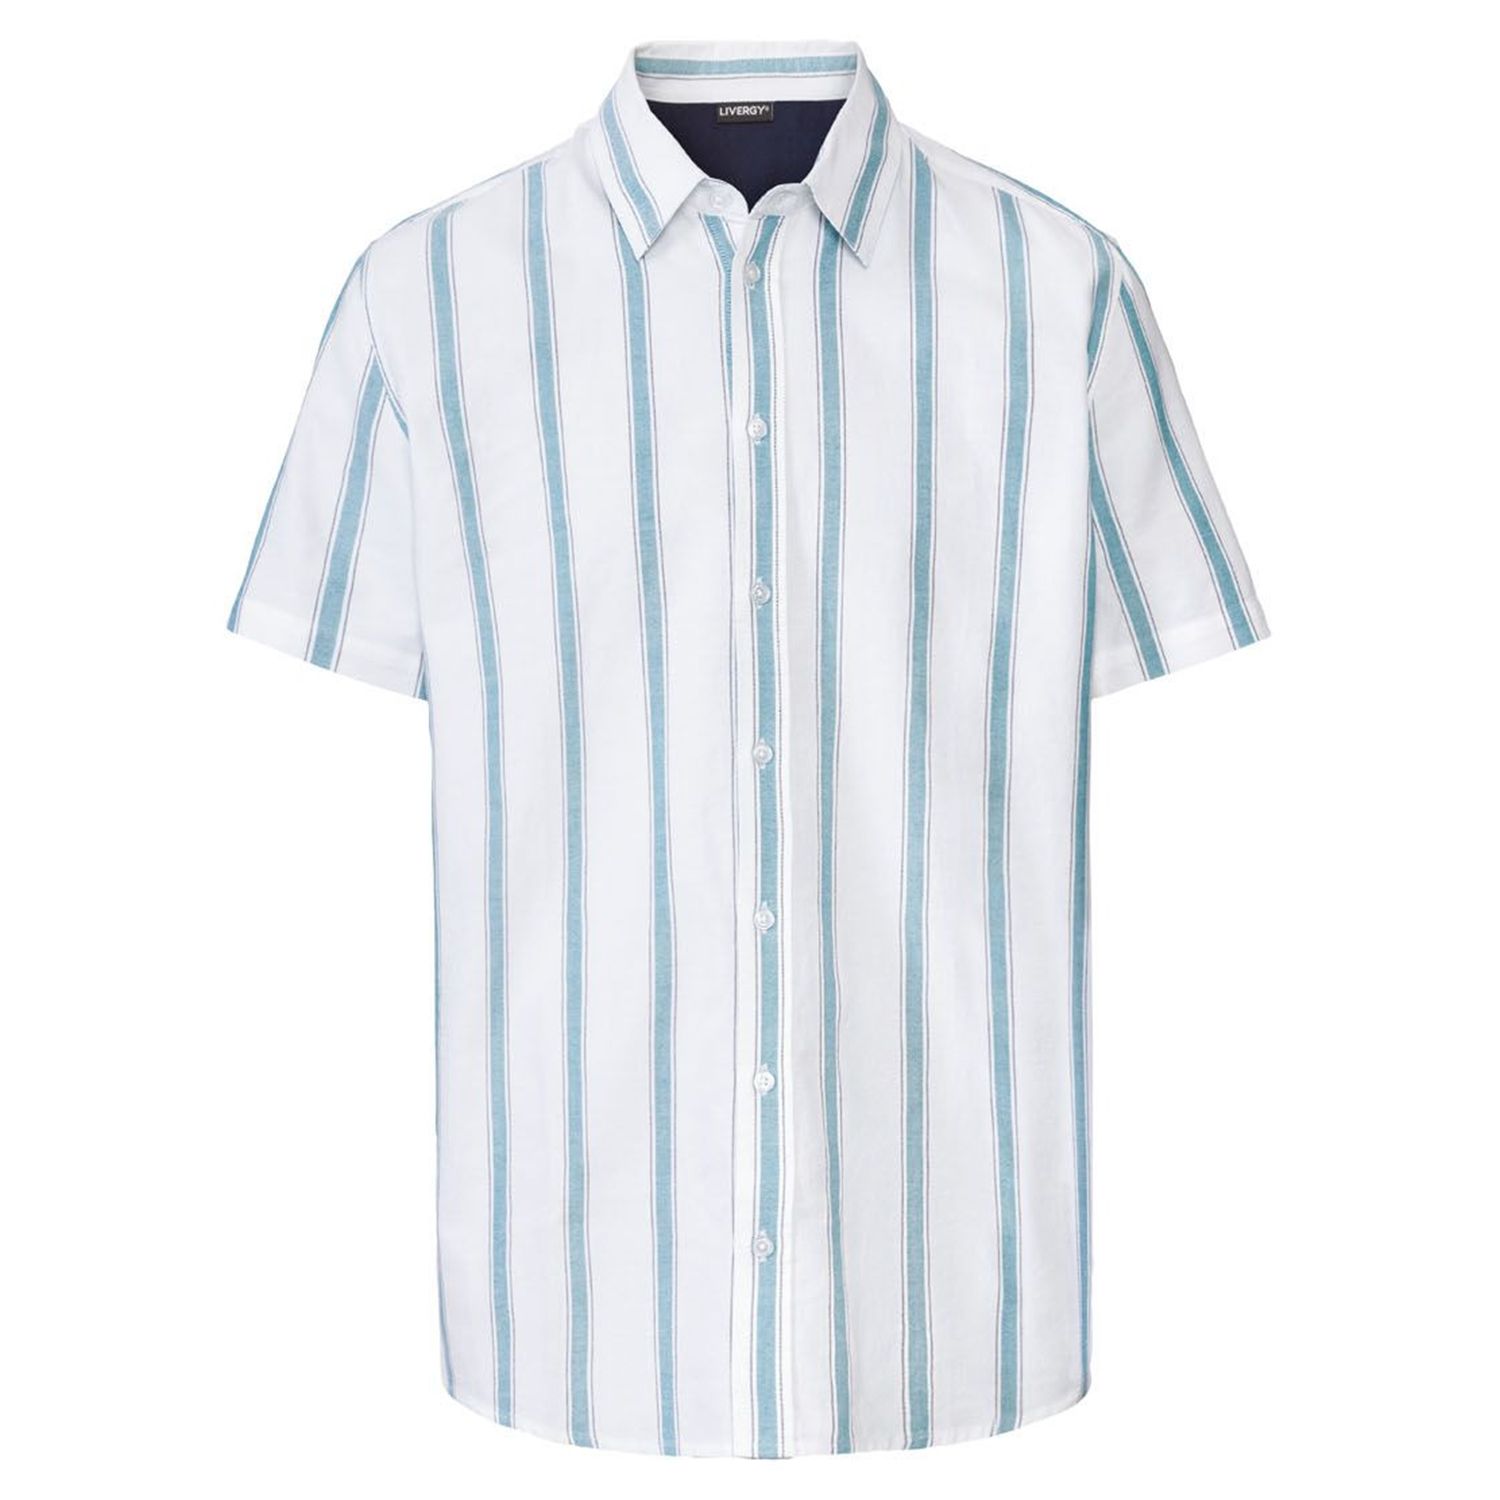 پیراهن آستین کوتاه مردانه لیورجی مدل راه راه کد Modern2022 رنگ سفید -  - 1